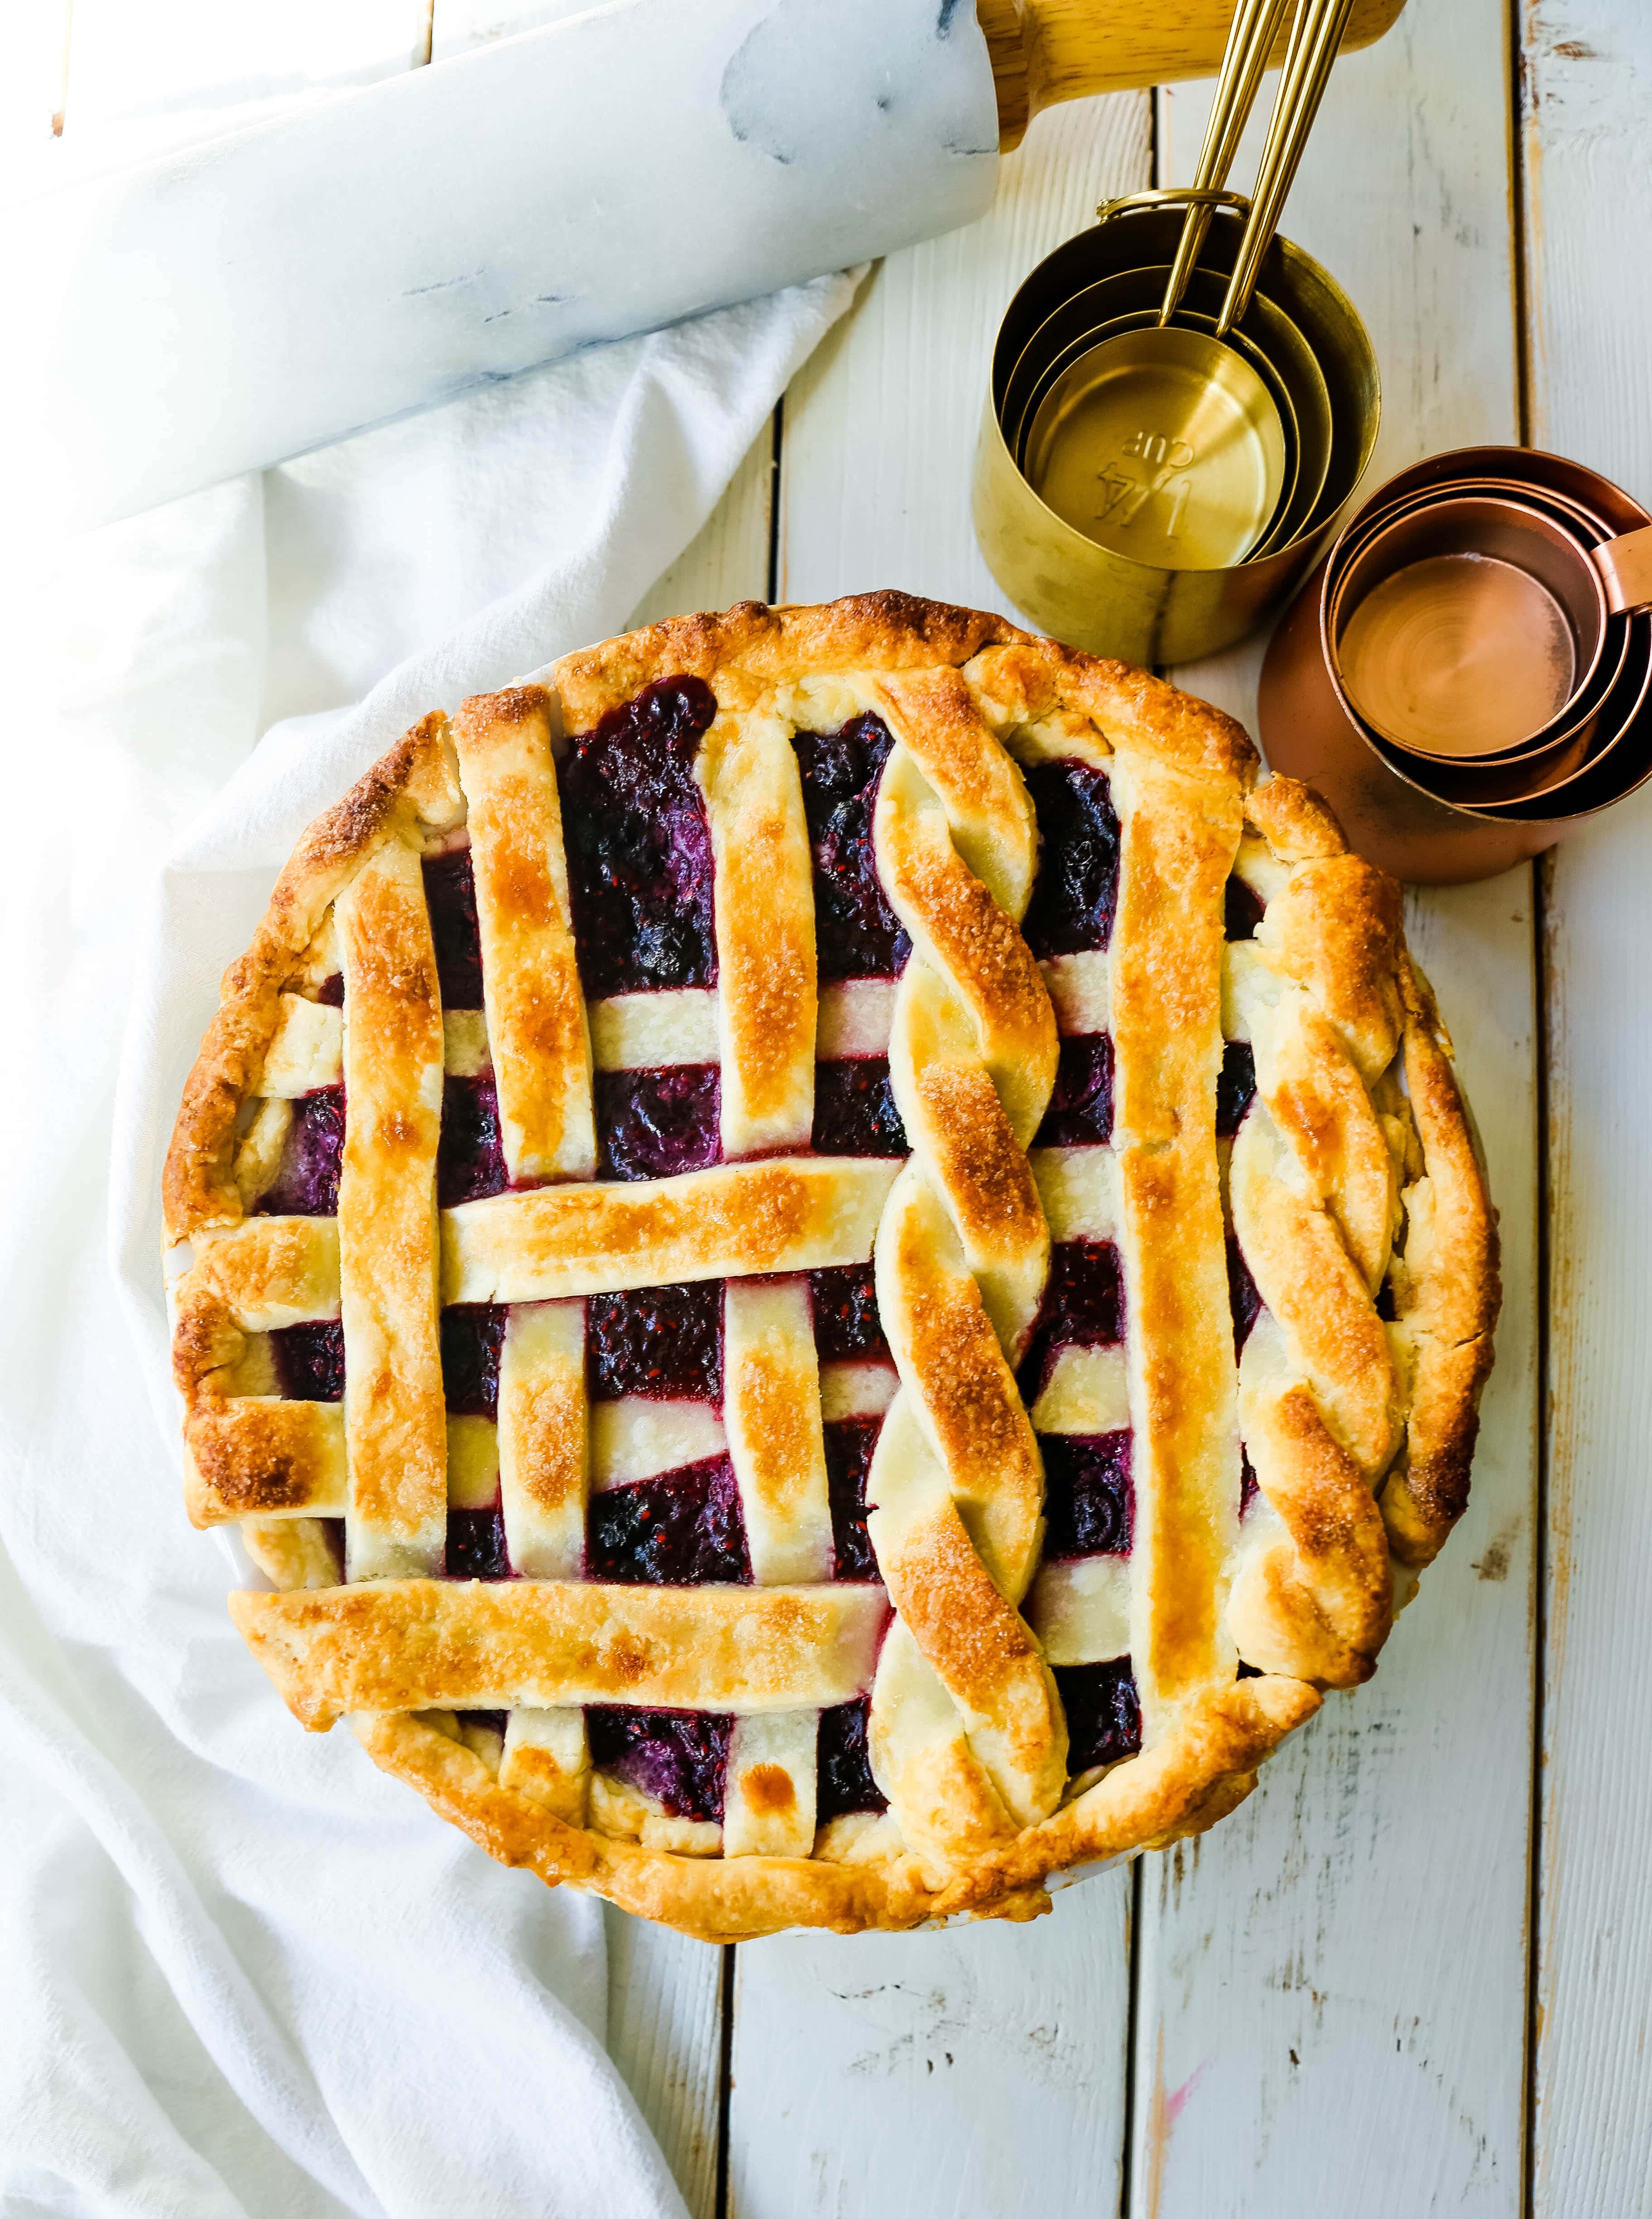 Triple Berry Pie. La meilleure recette de tarte aux baies faite maison avec une pâte à tarte beurrée. Complétez-la avec de la glace à la gousse de vanille et vous avez le dessert aux baies parfait ! La meilleure recette de tarte aux baies. www.modernhoney.com #berrypie #pie #berries #tripleberrypie #thanksgiving